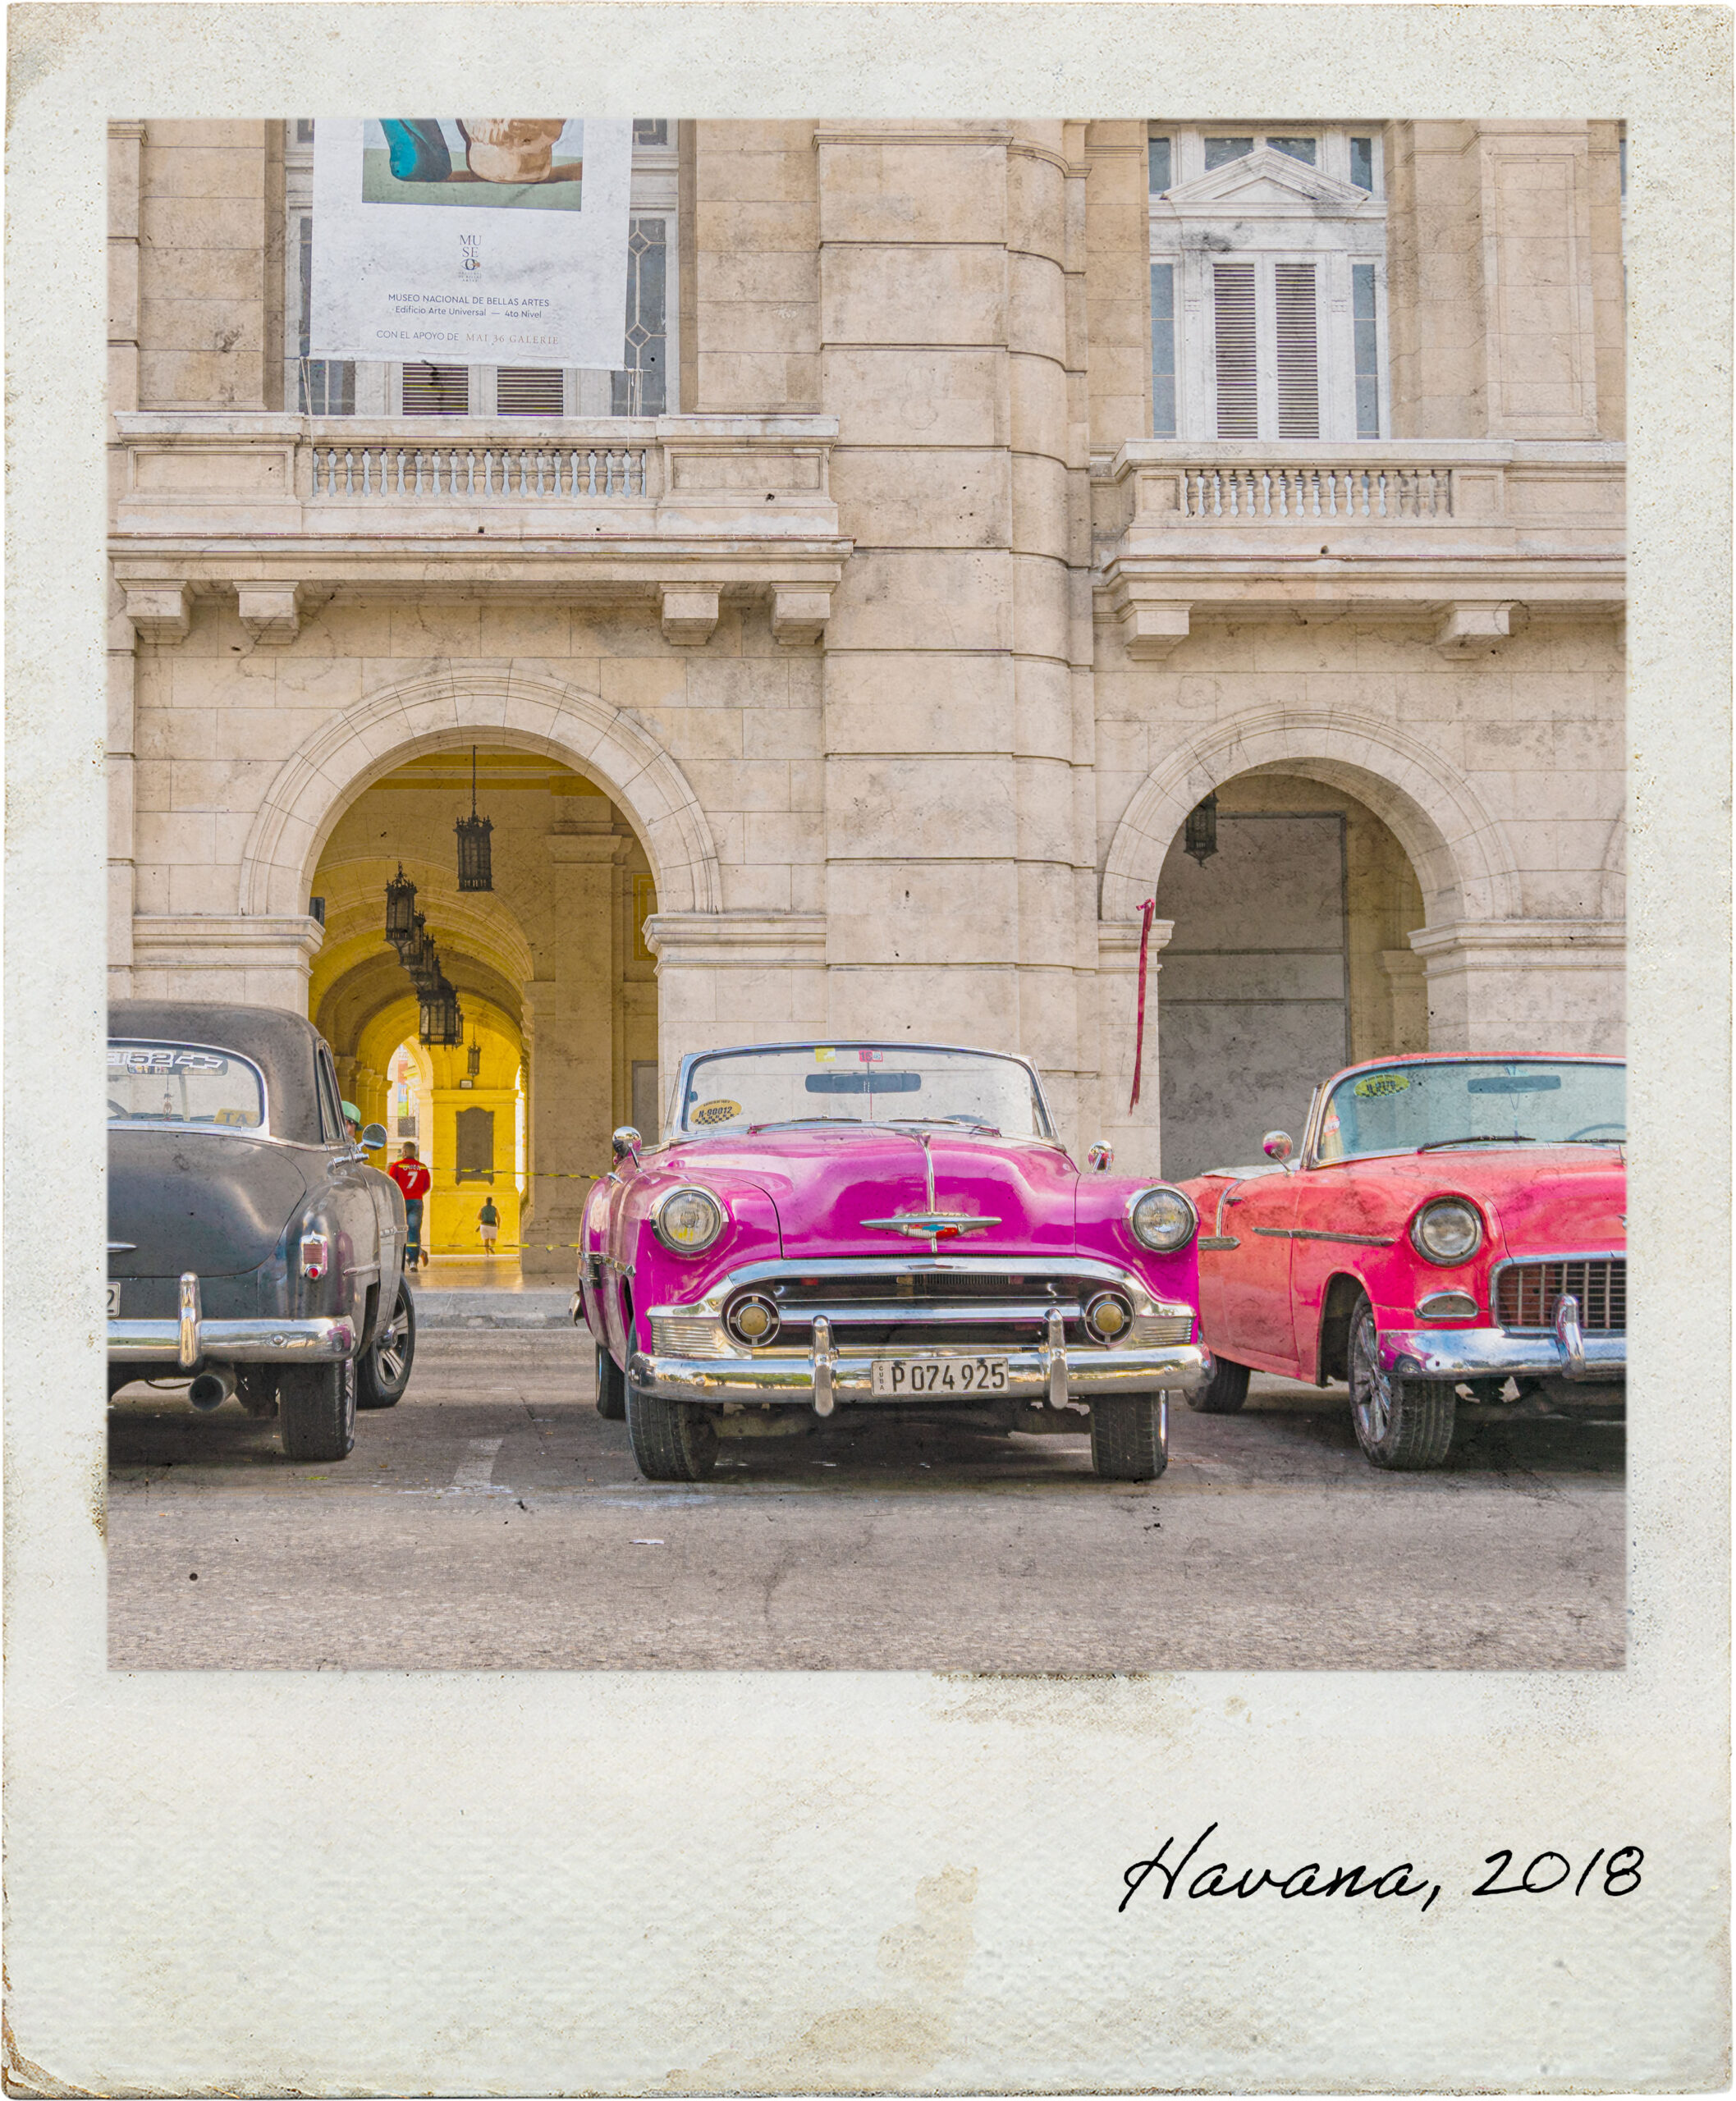 Carros antigos em Havana